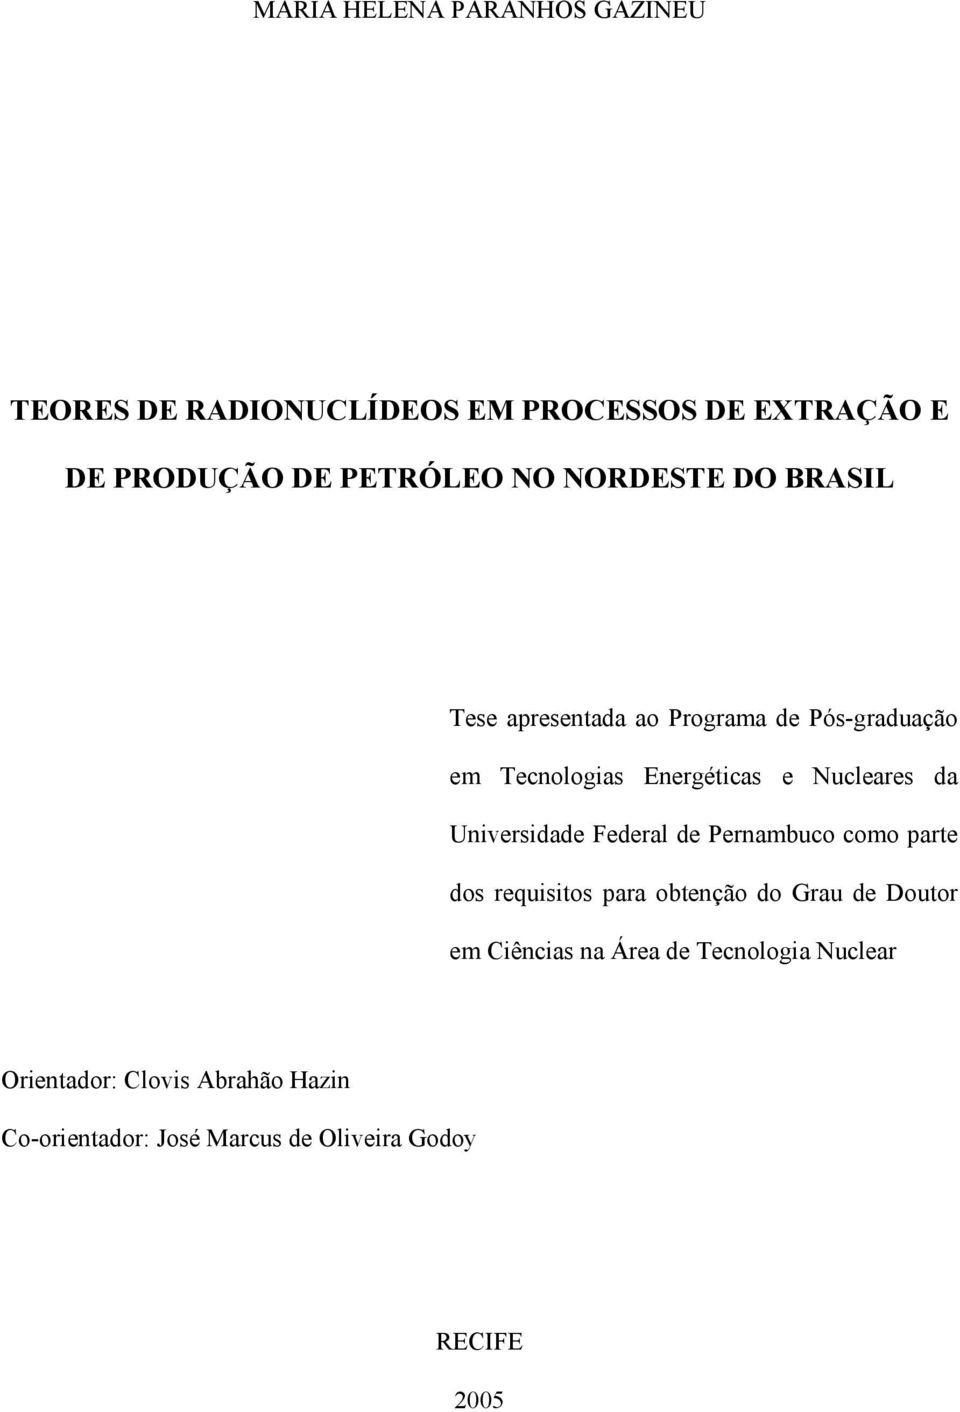 Universidade Federal de Pernambuco como parte dos requisitos para obtenção do Grau de Doutor em Ciências na